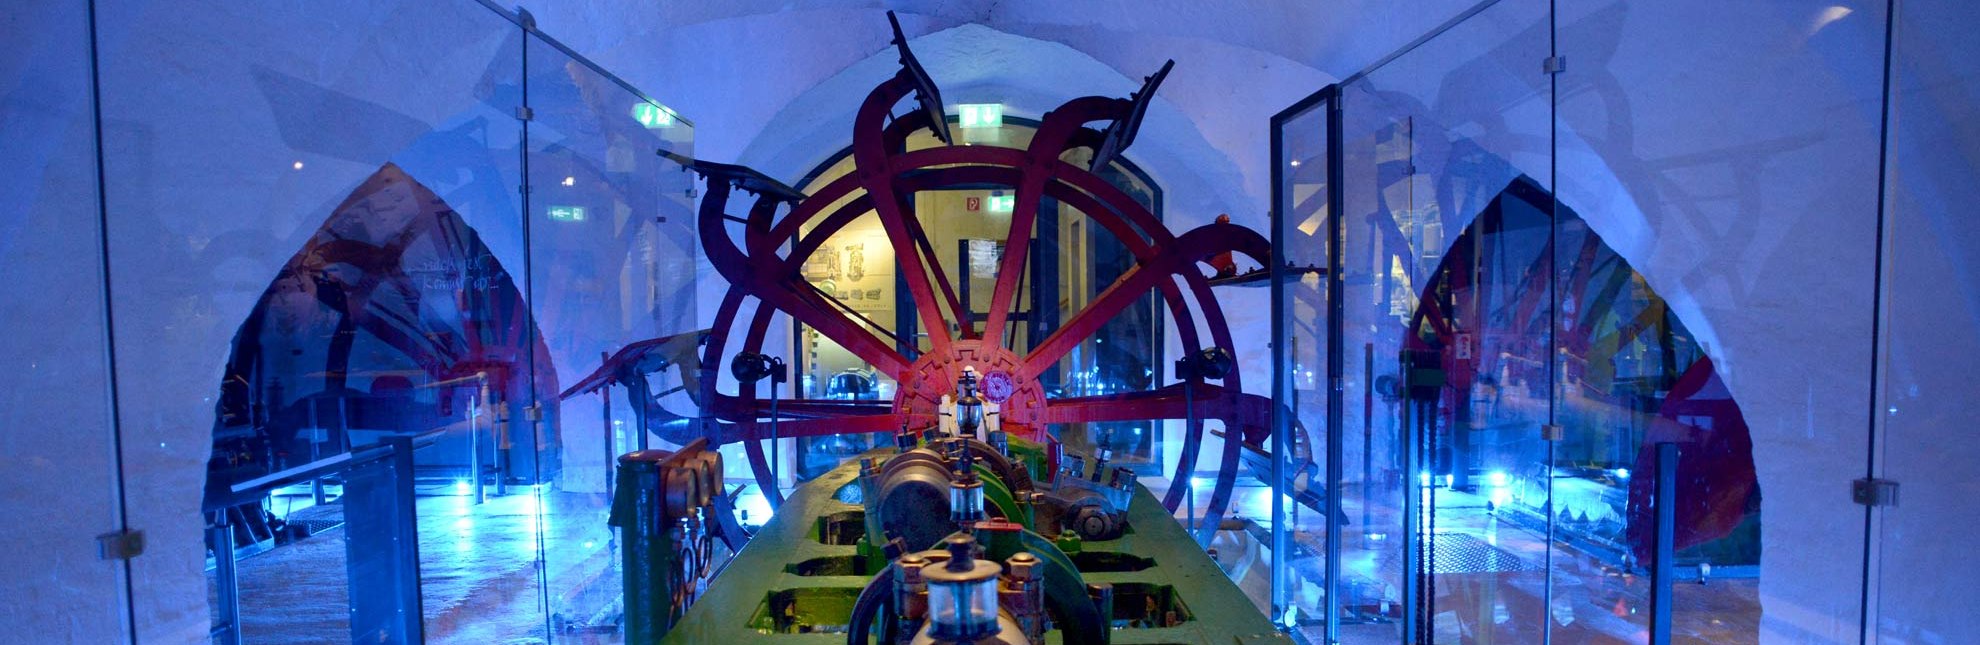 Das Elbschifffahrtsmuseum in Lauenburg/Elbe präsentiert alte Schiffsantriebe., © Uwe Franzen / Tourist-Information Lauenburg